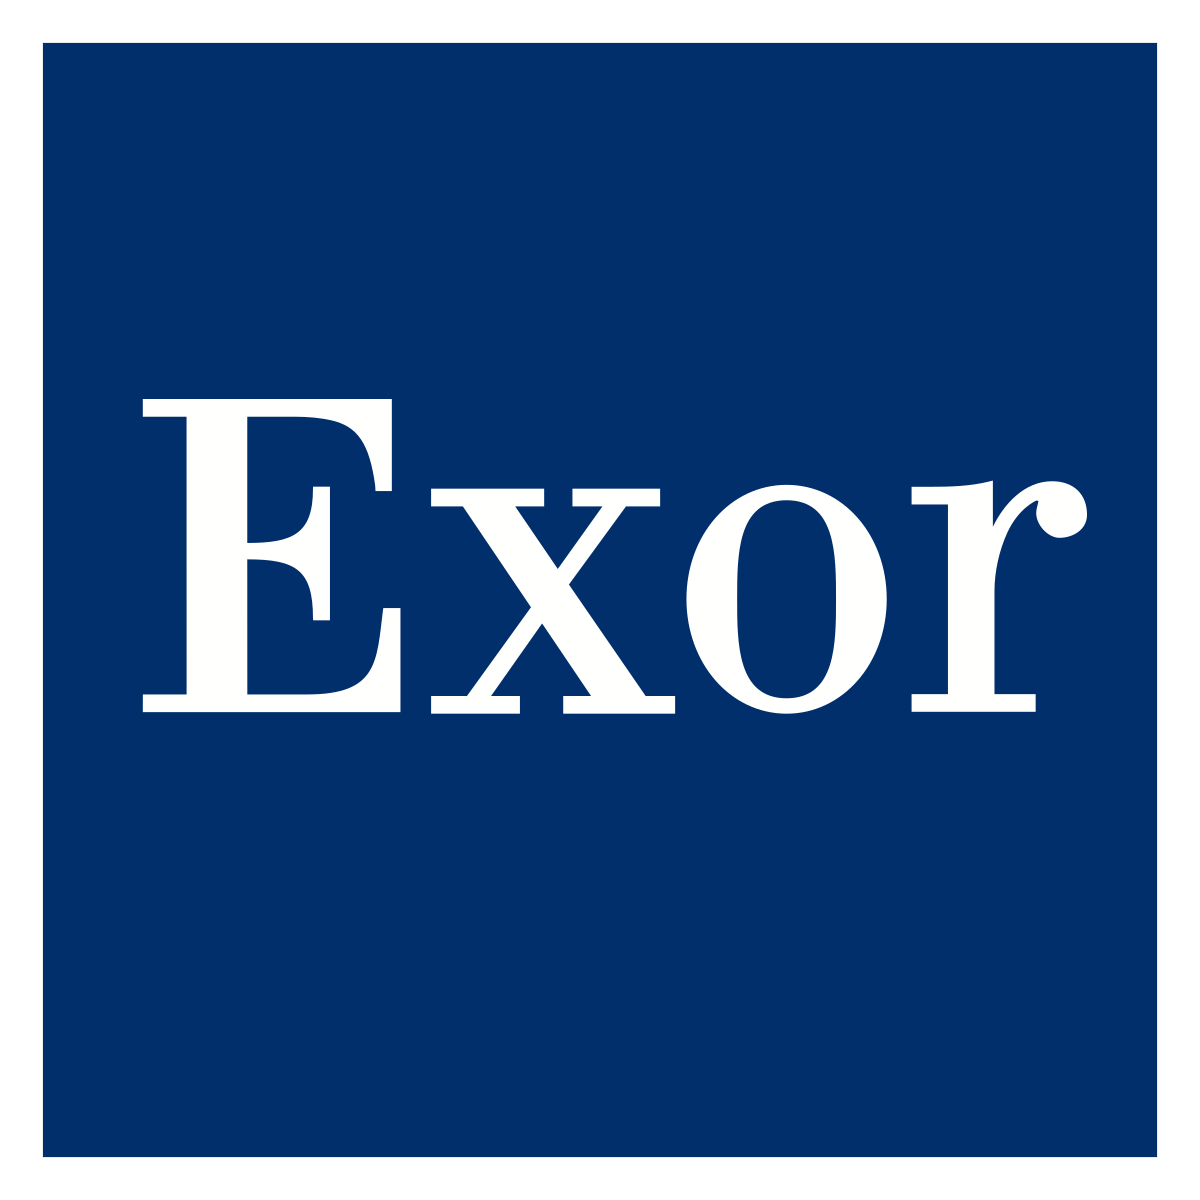 The Exor brand.